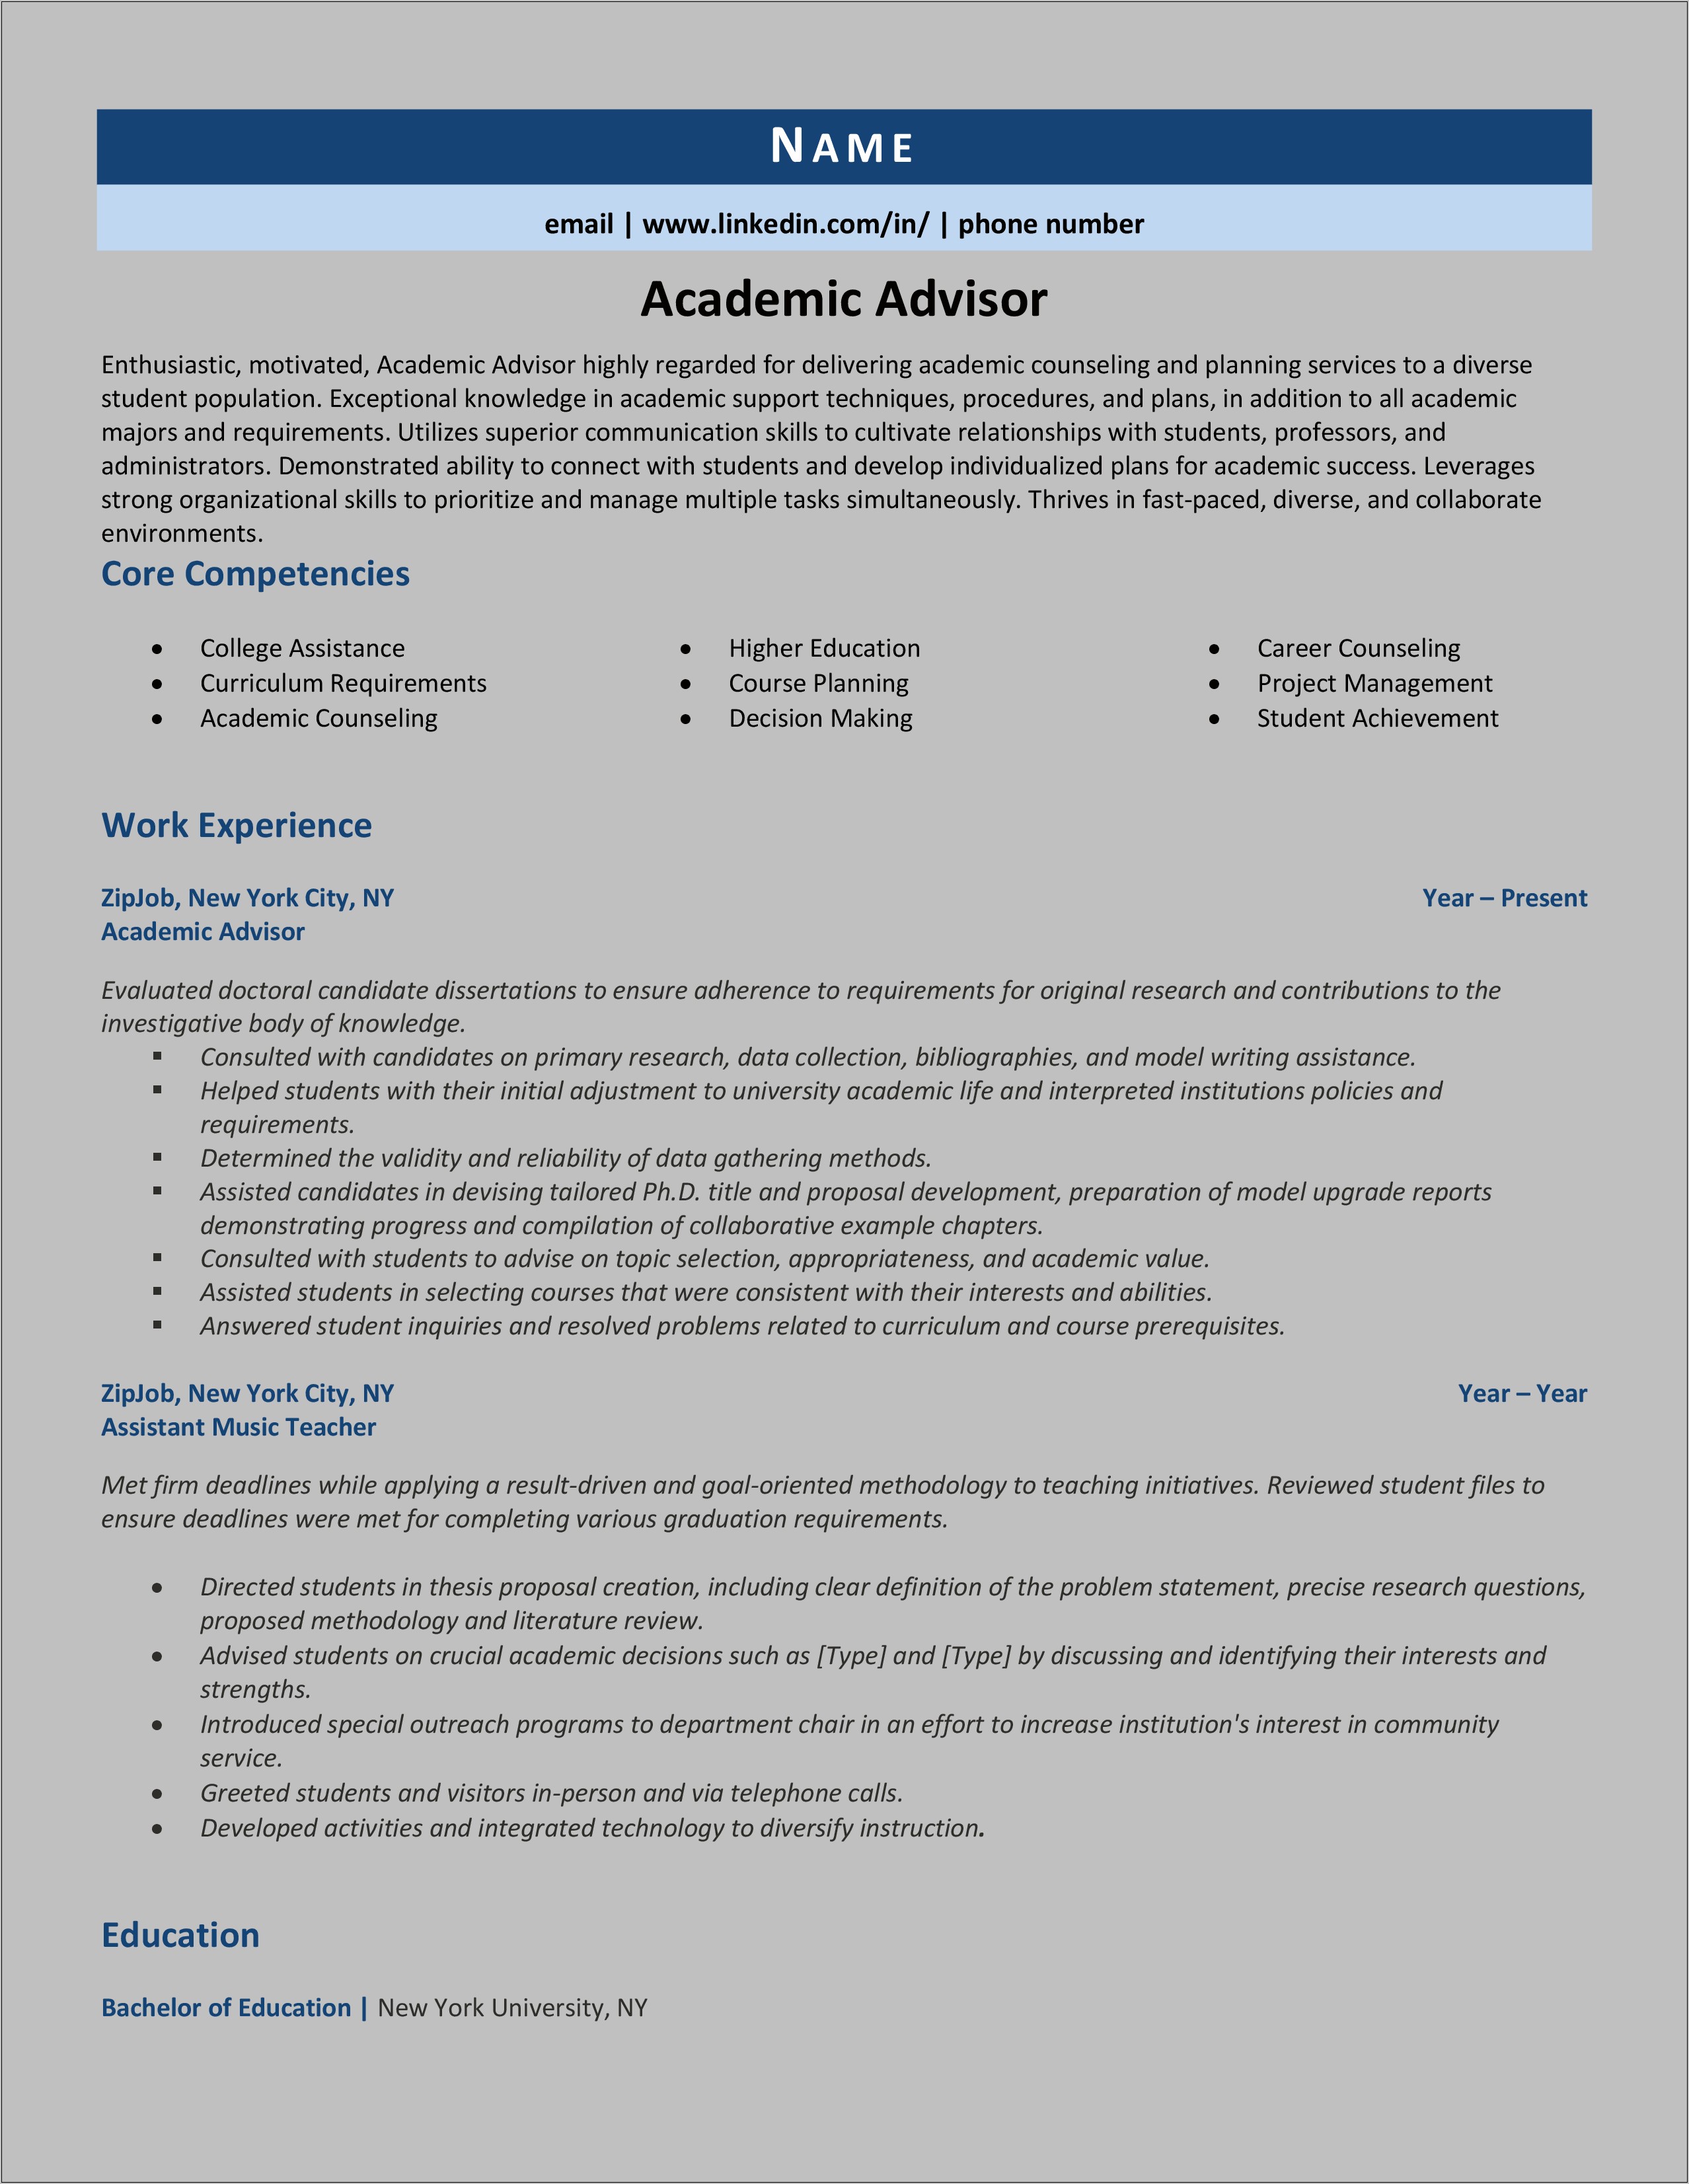 Sample Resume For College Academic Advisor